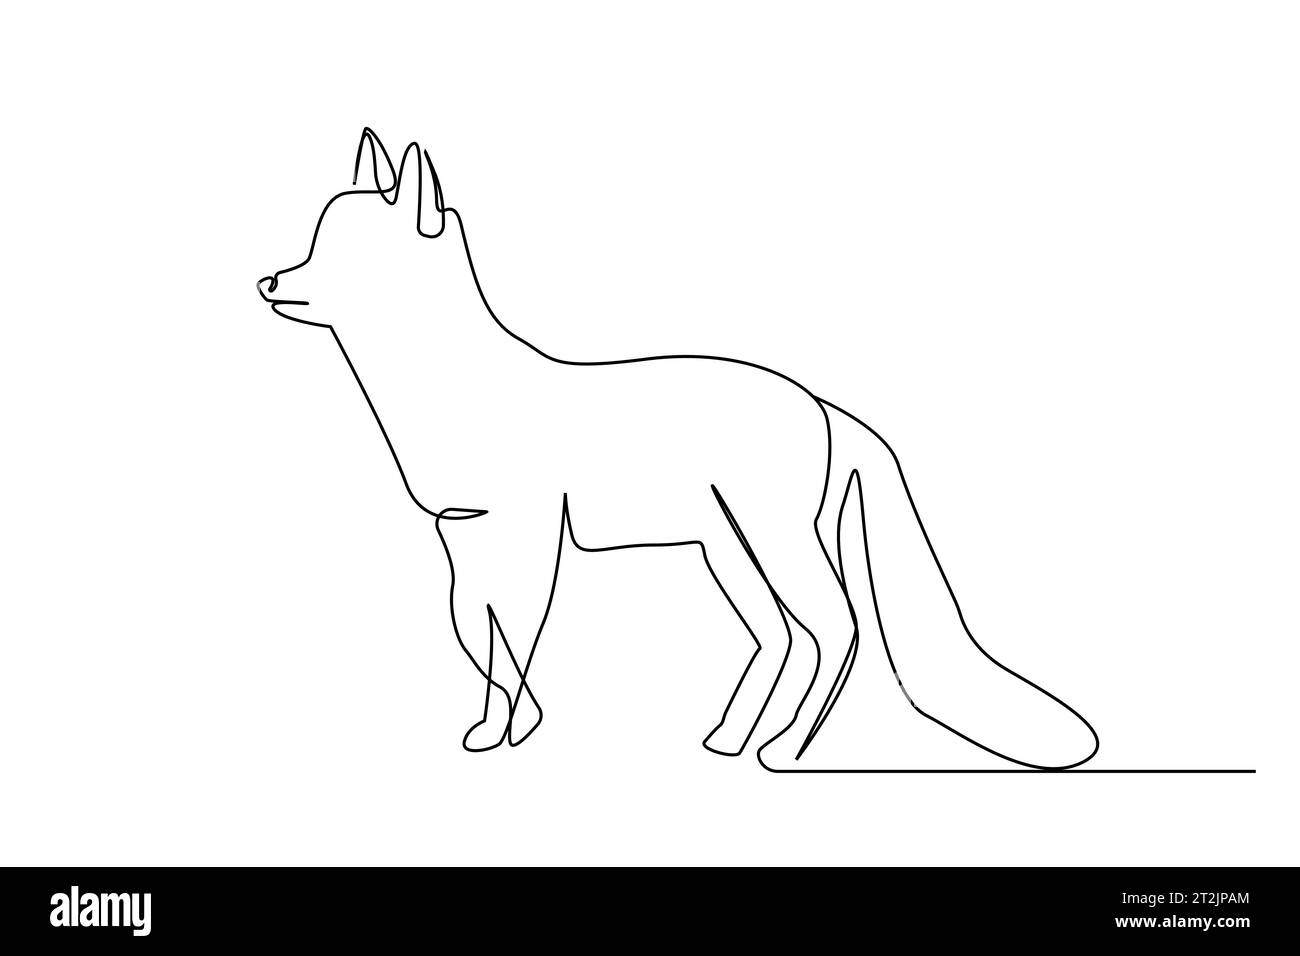 wolf fox animal line art full body length Stock Vector